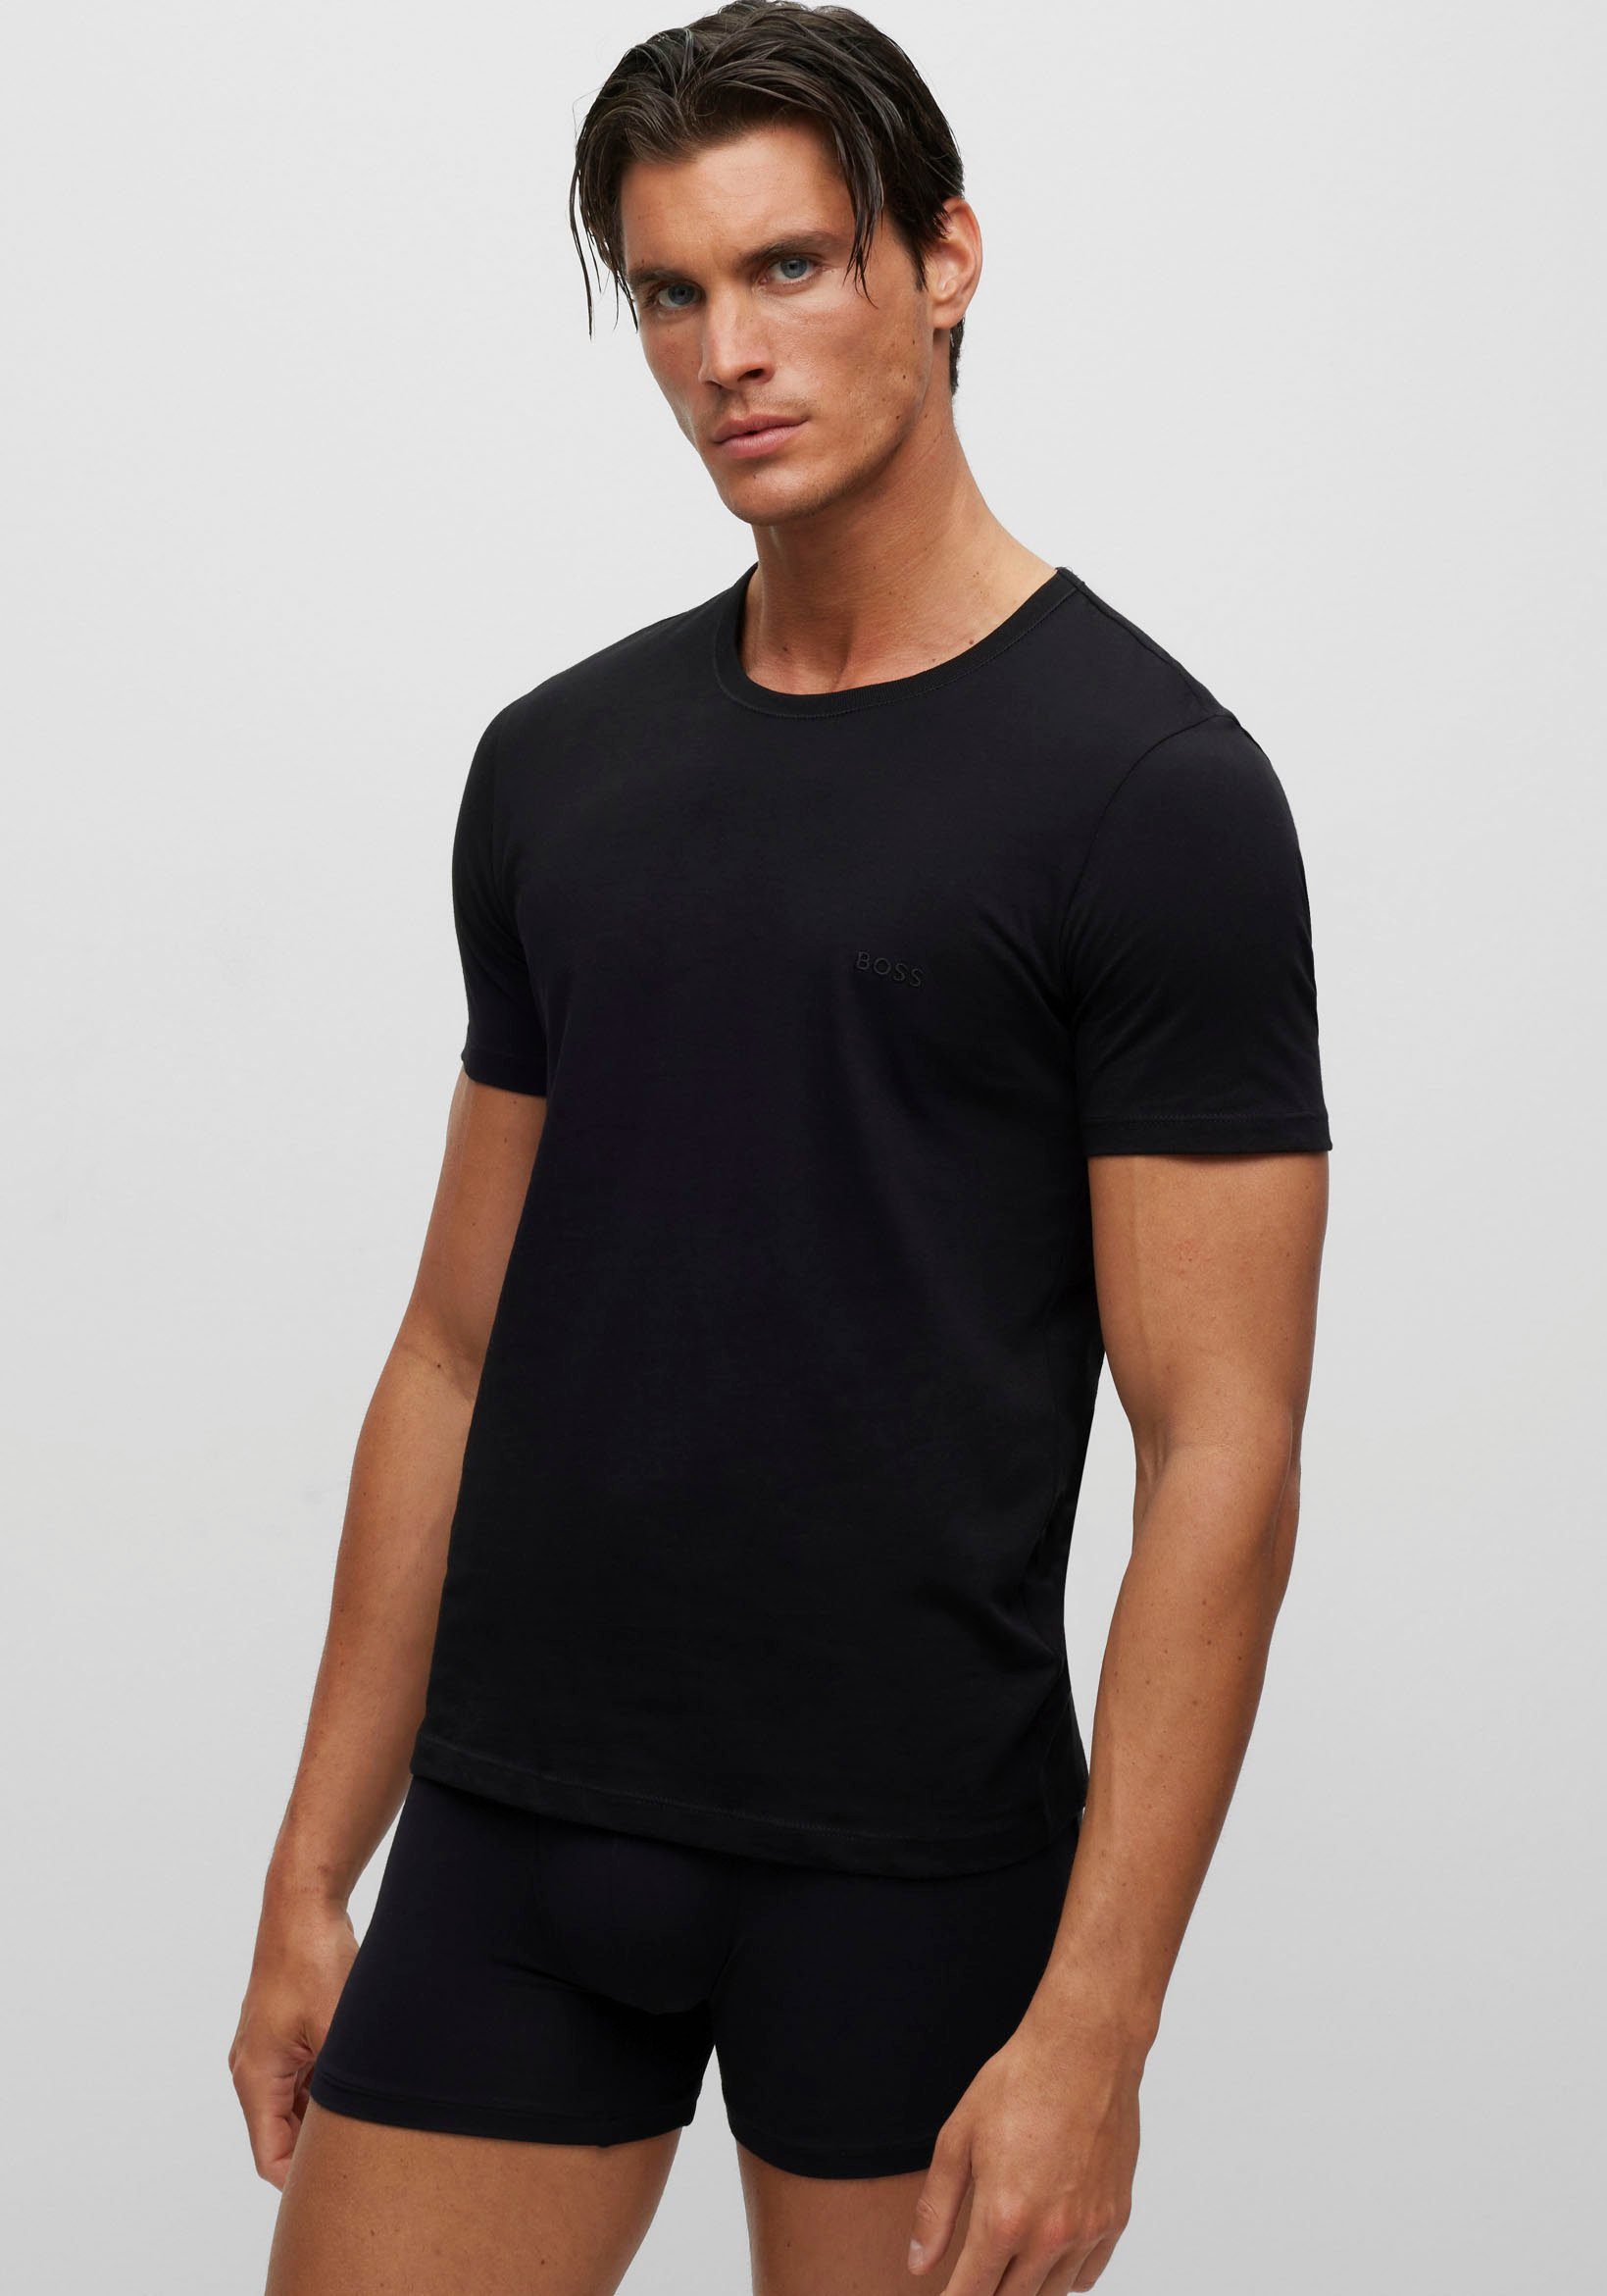 Rundhals dezentem BOSS T-Shirt mit BOSS Logo-Print T-Shirt black001 (3er-Pack)